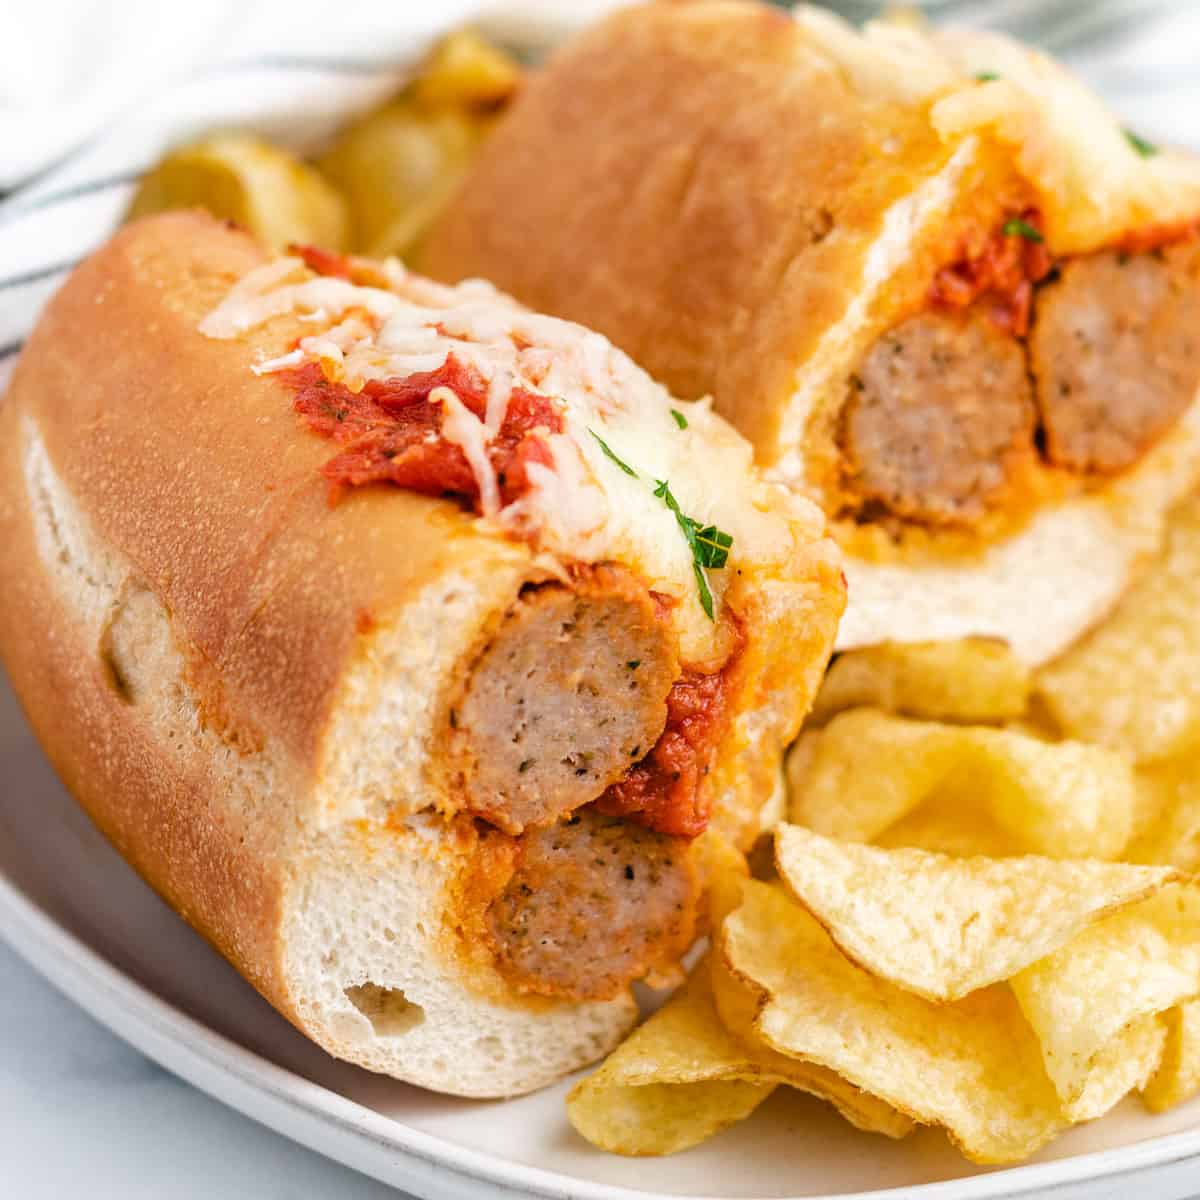 https://www.berlyskitchen.com/wp-content/uploads/2021/07/Meatball-Sandwich-Featured-Image.jpg